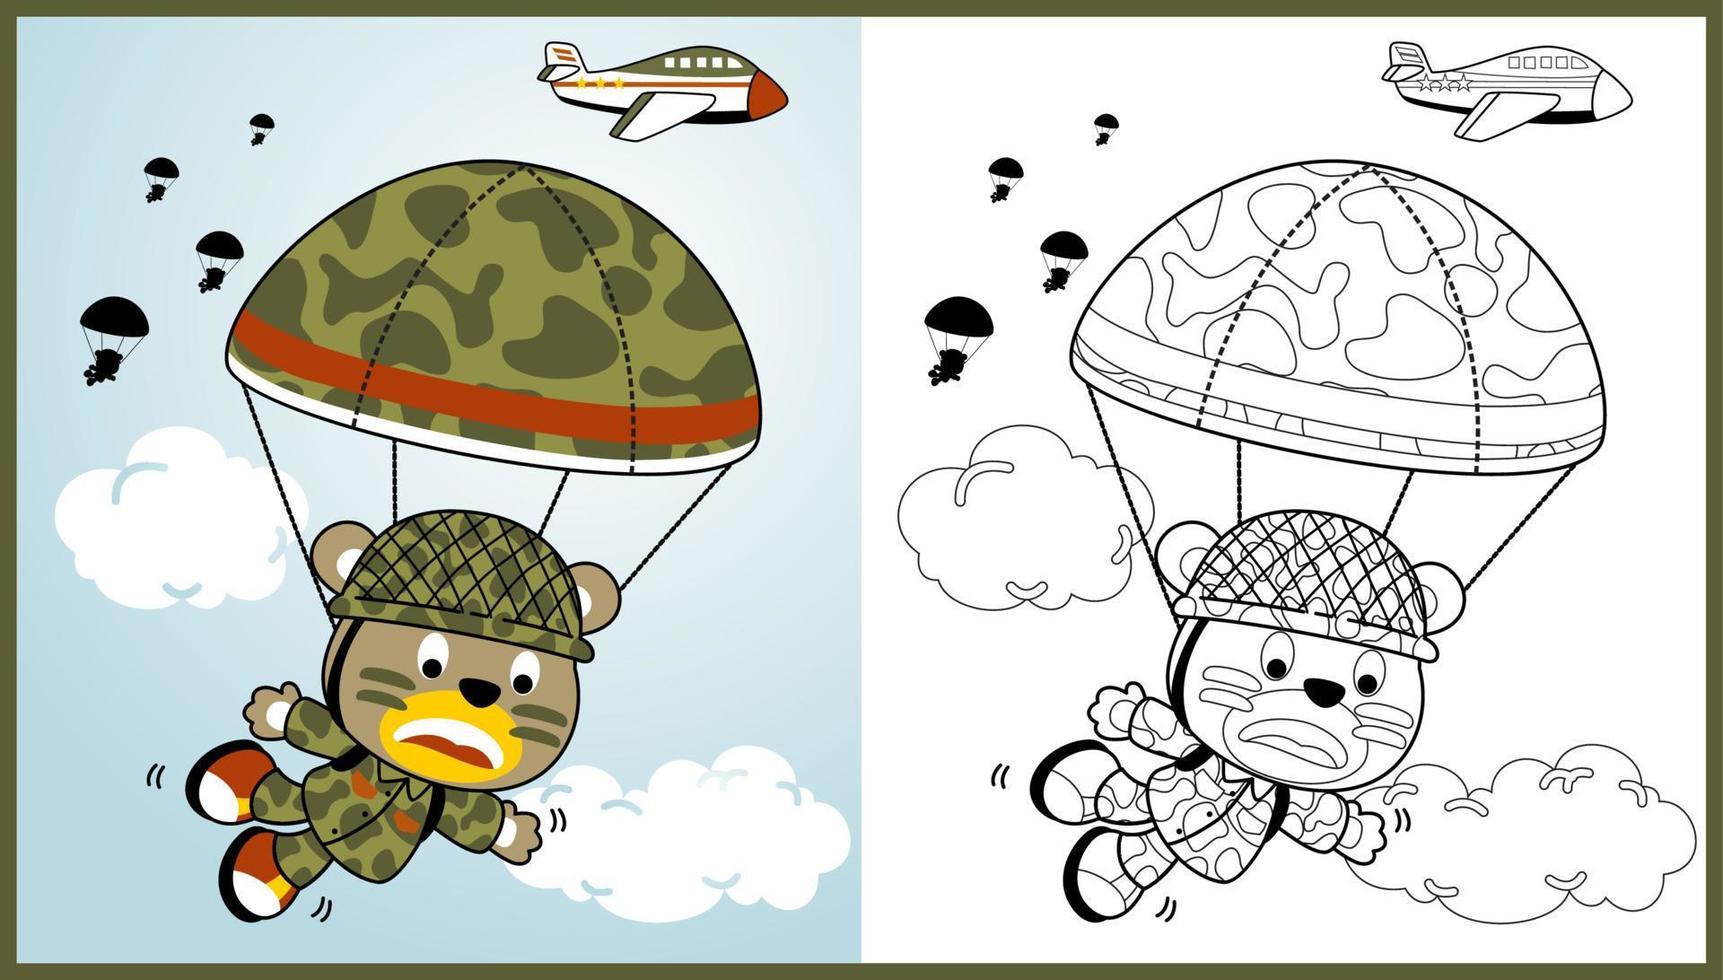 rolig Björn soldat fallskärmshoppning, vektor tecknad serie illustration, färg bok eller sida